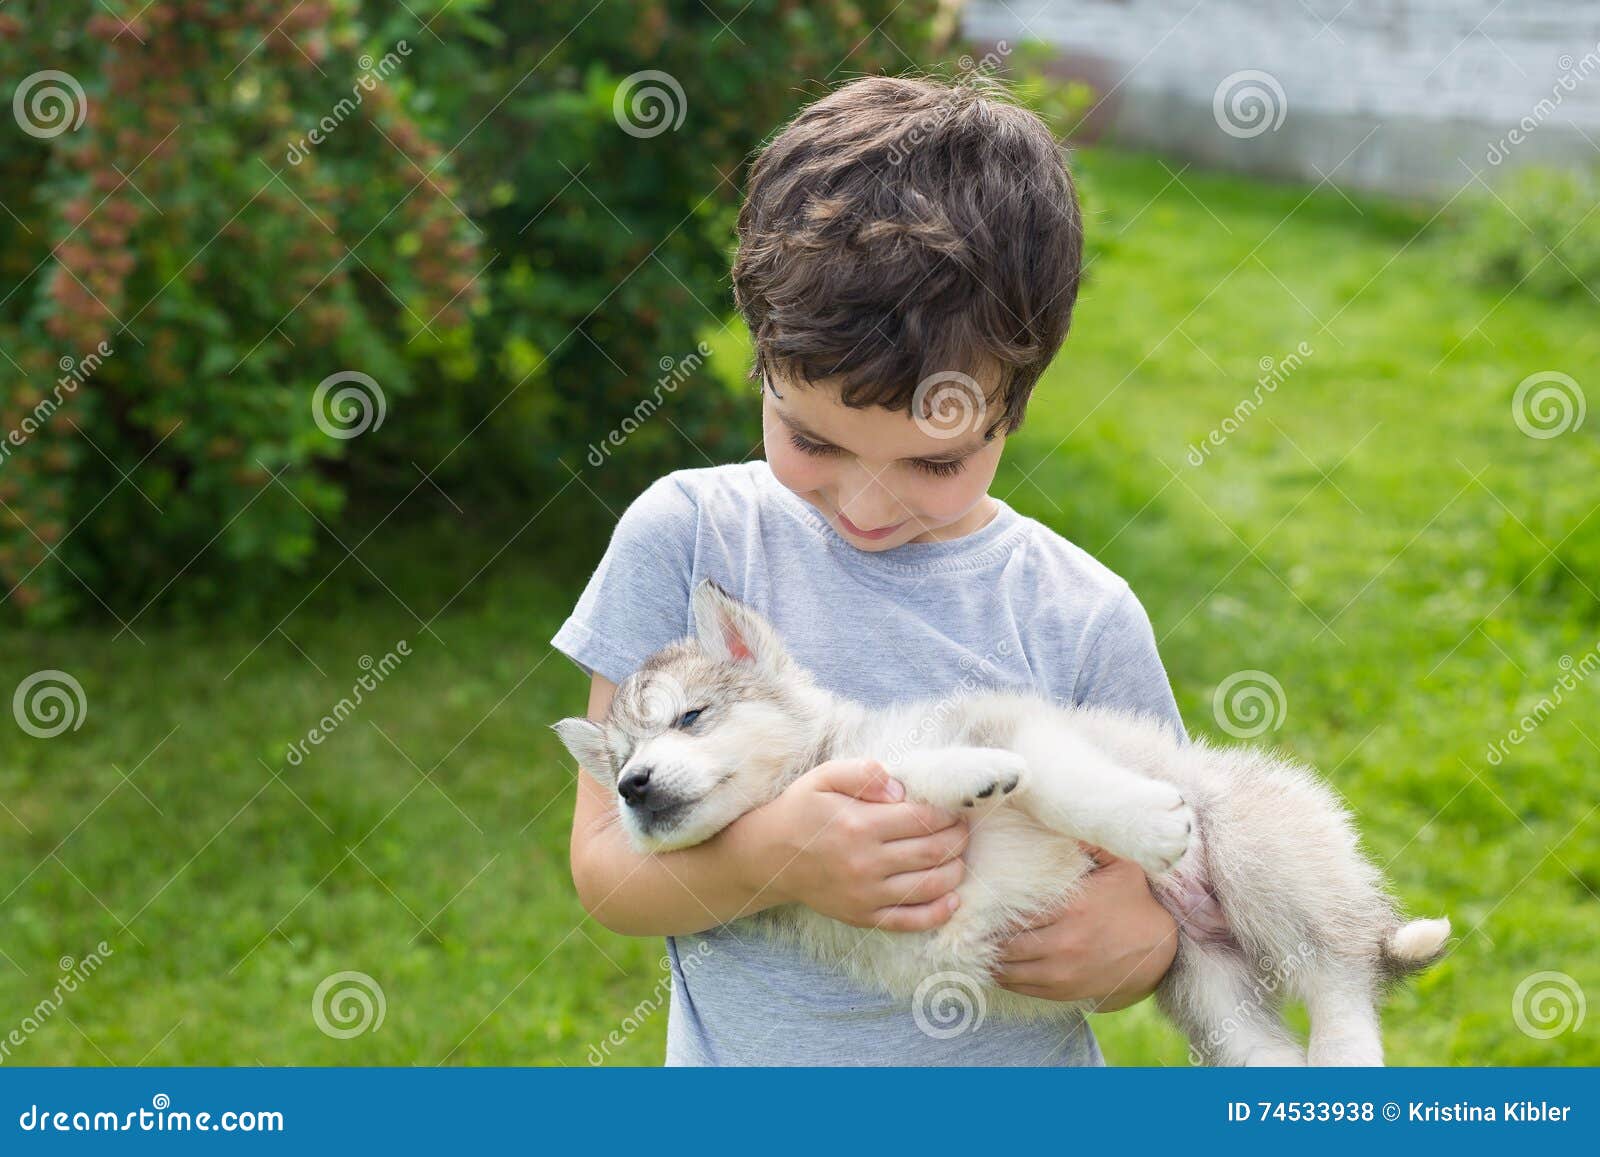 Мальчик держит собаку на руках. Щенок на руках. Щенок на руках у ребенка. Мальчик с щенком в руках.